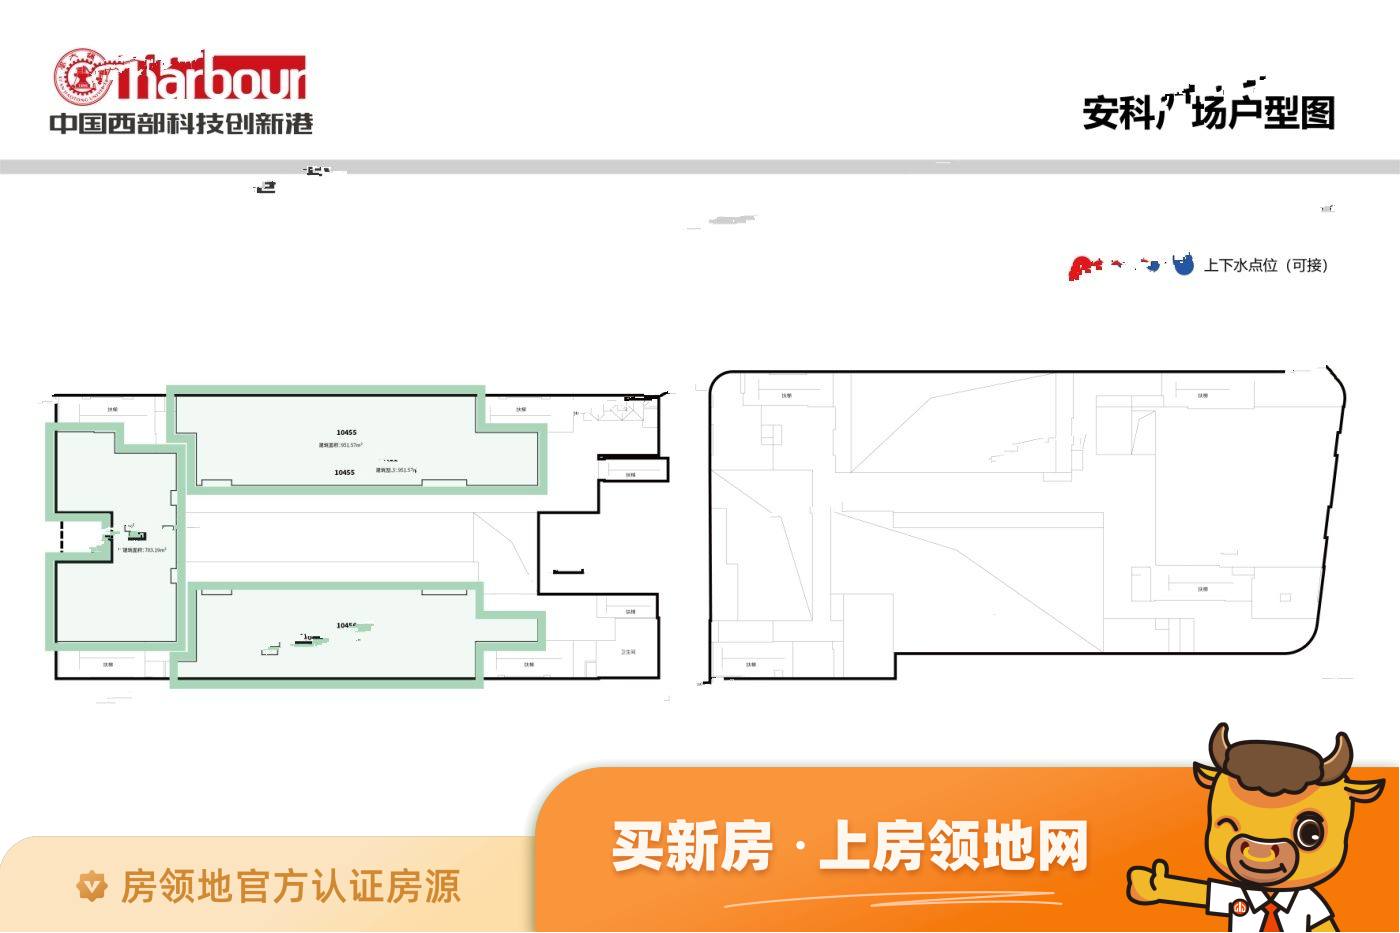 中国西部科技创新港学镇中心Ⅱ期规划图26